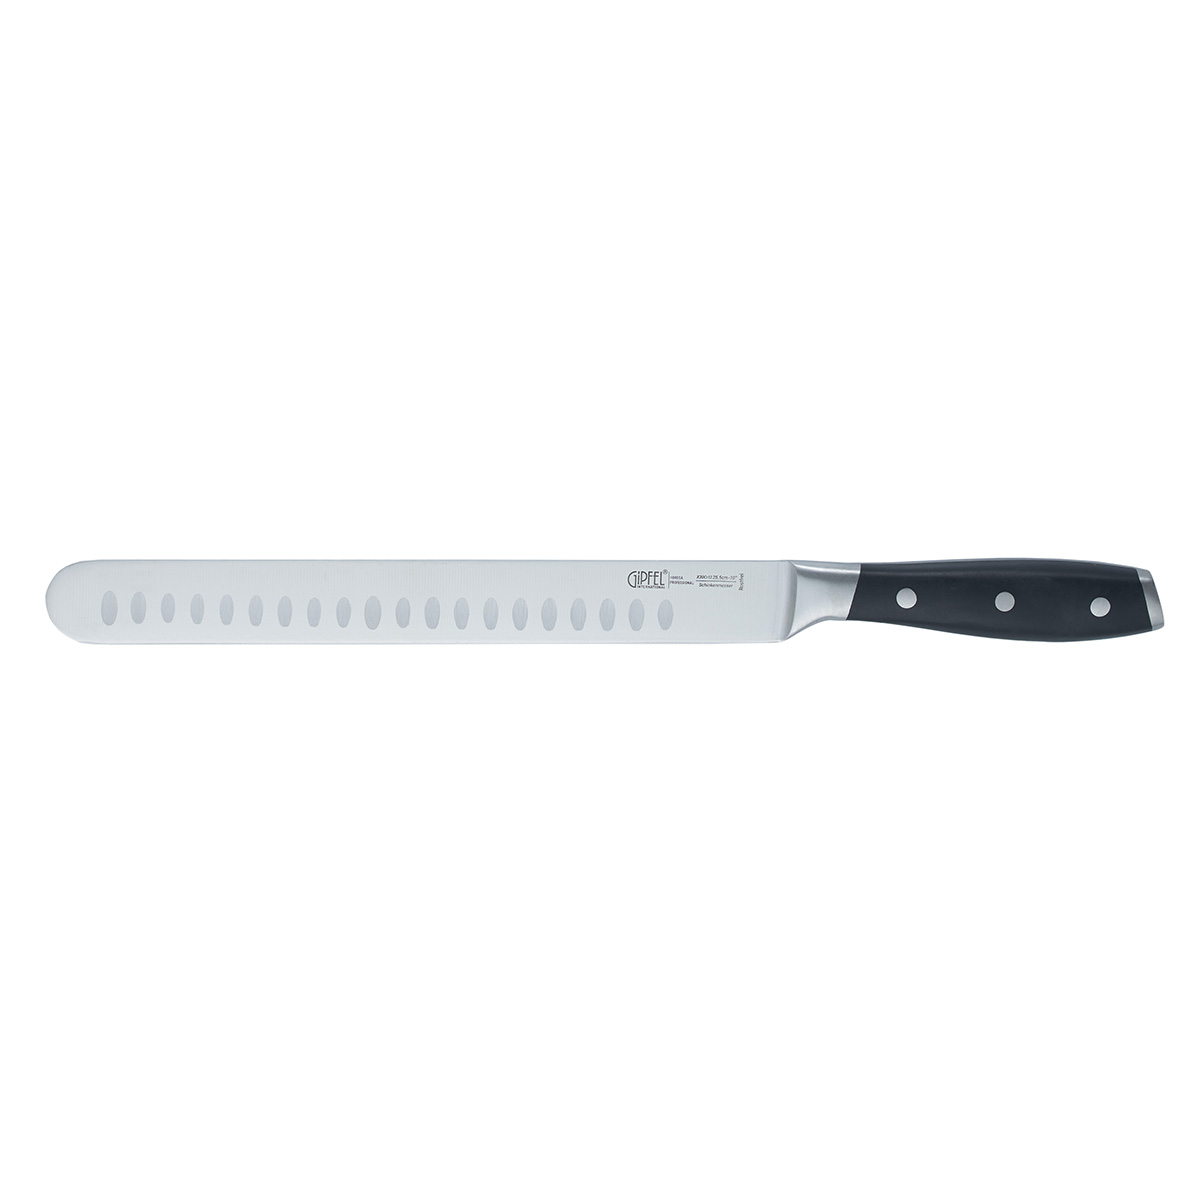 Нож c выточками для тонкой нарезки Gipfel Horeca Pro 50579 25 см нож для нарезки kai камагата 23 см кованая сталь ручка пластик